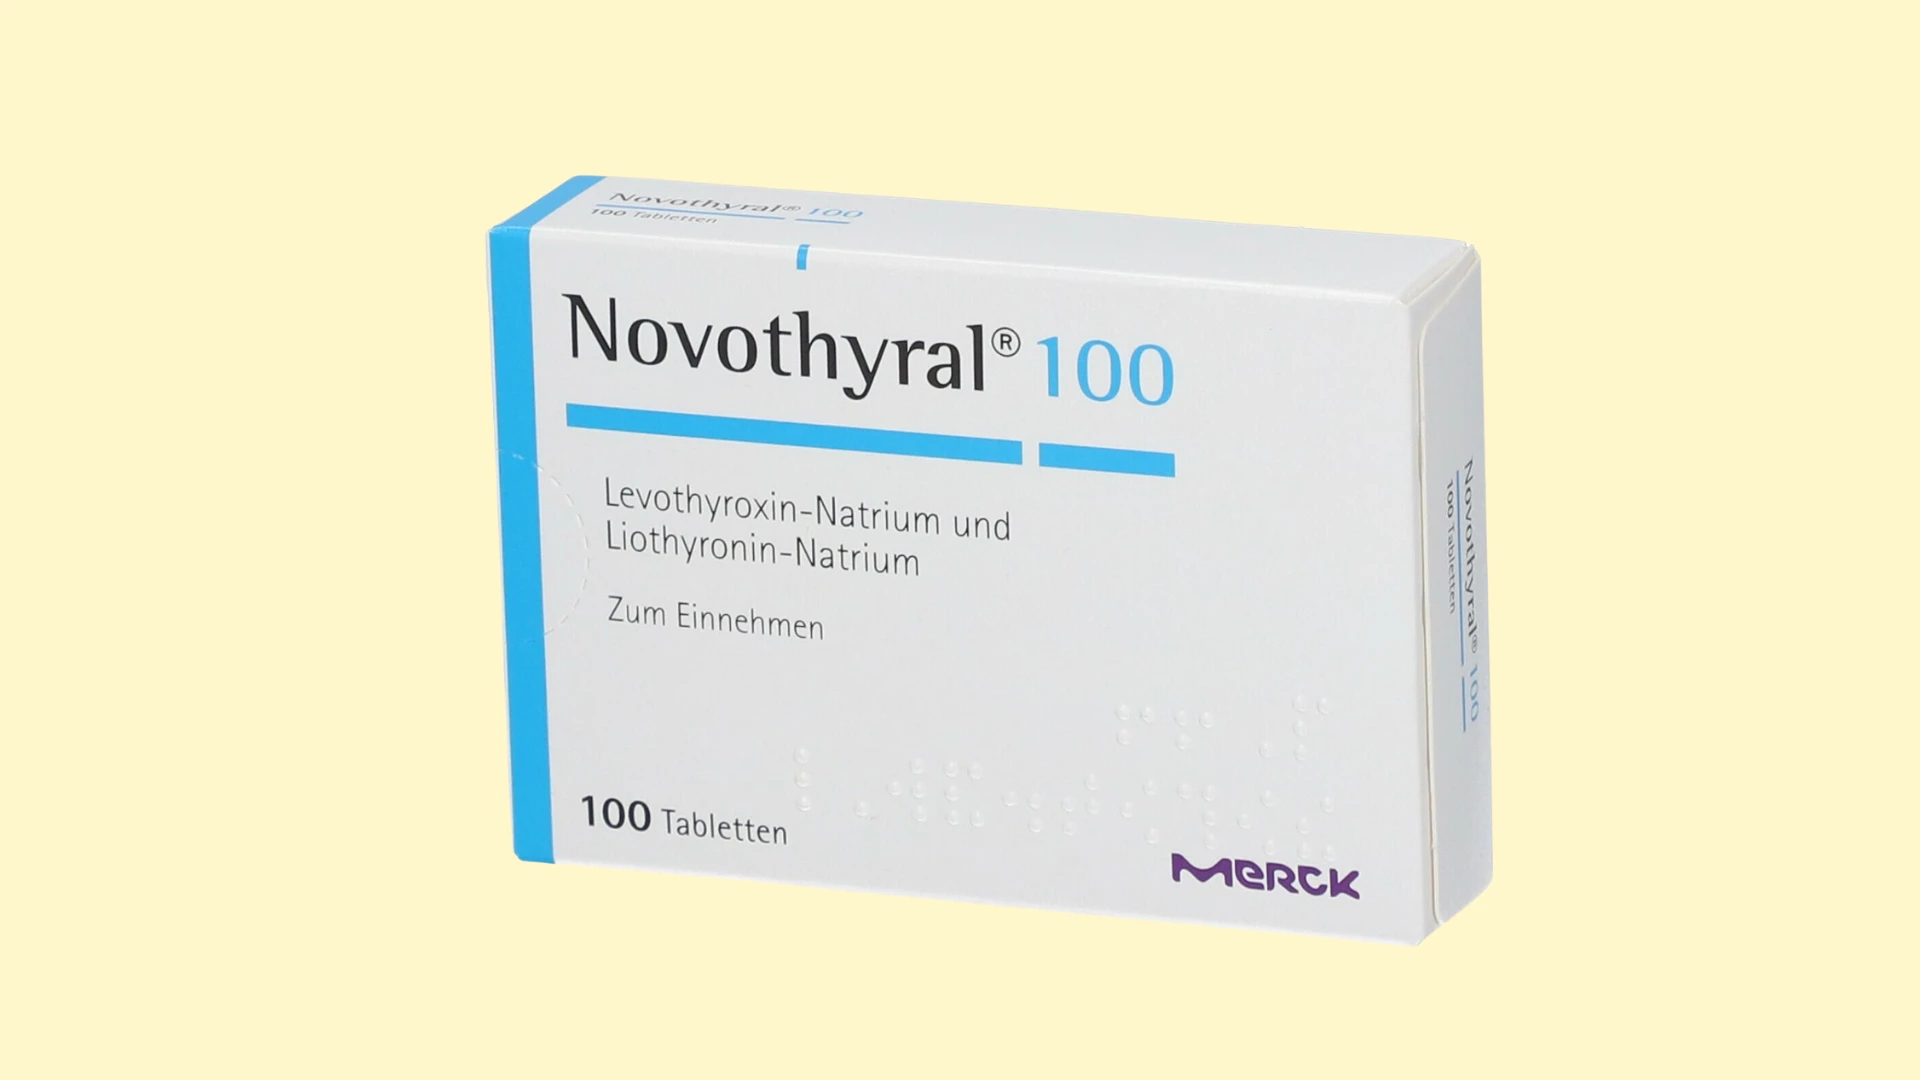 Novothyral- E-recepta - recepta online z konsultacją | cena, dawkowanie, przeciwwskazania